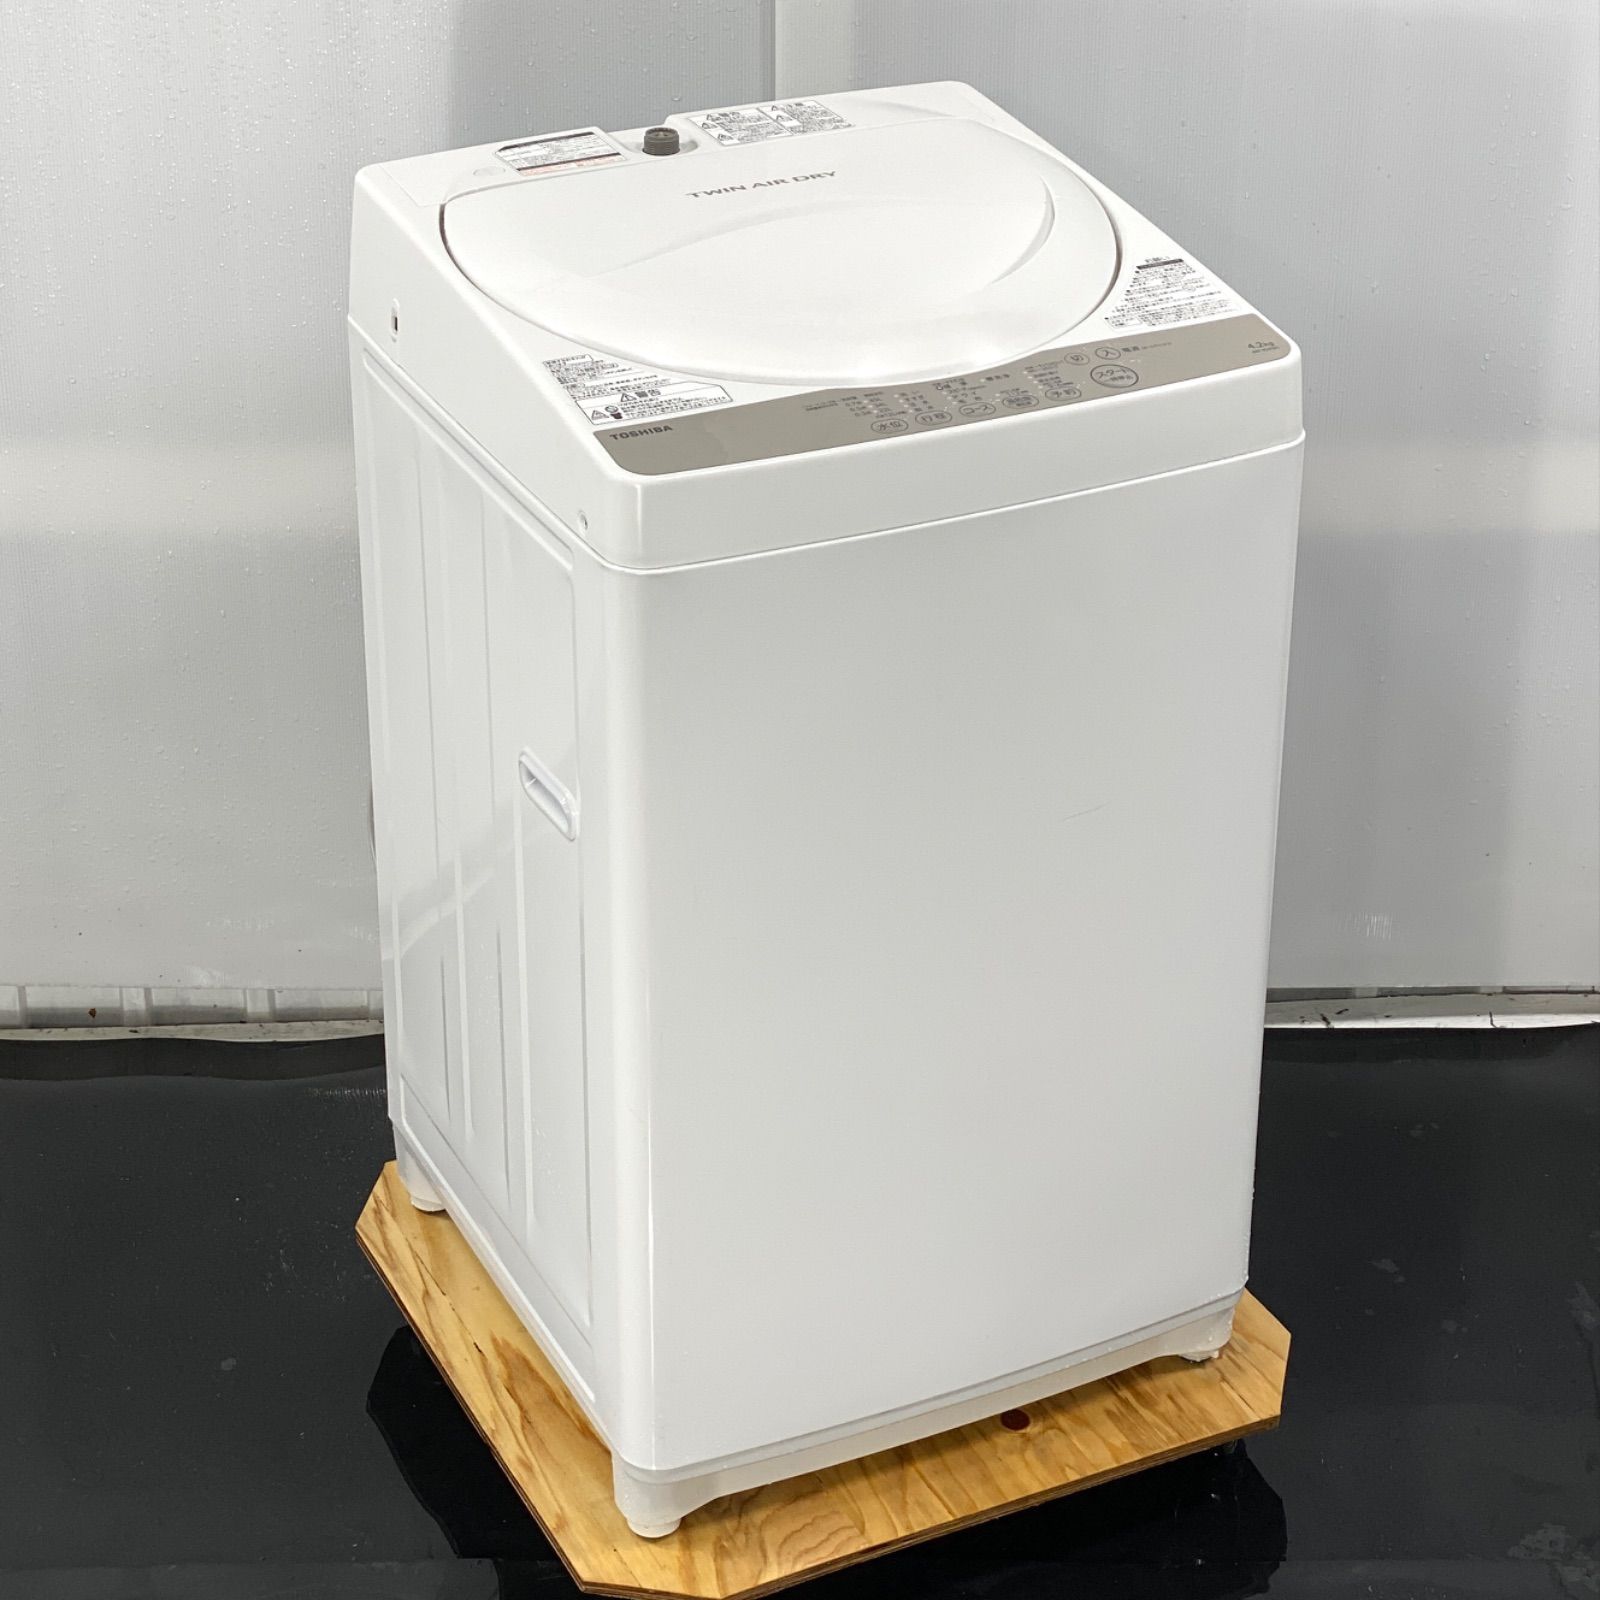 東芝 全自動洗濯機 グランホワイト 4.2kg AW-4S3(W) - メルカリ